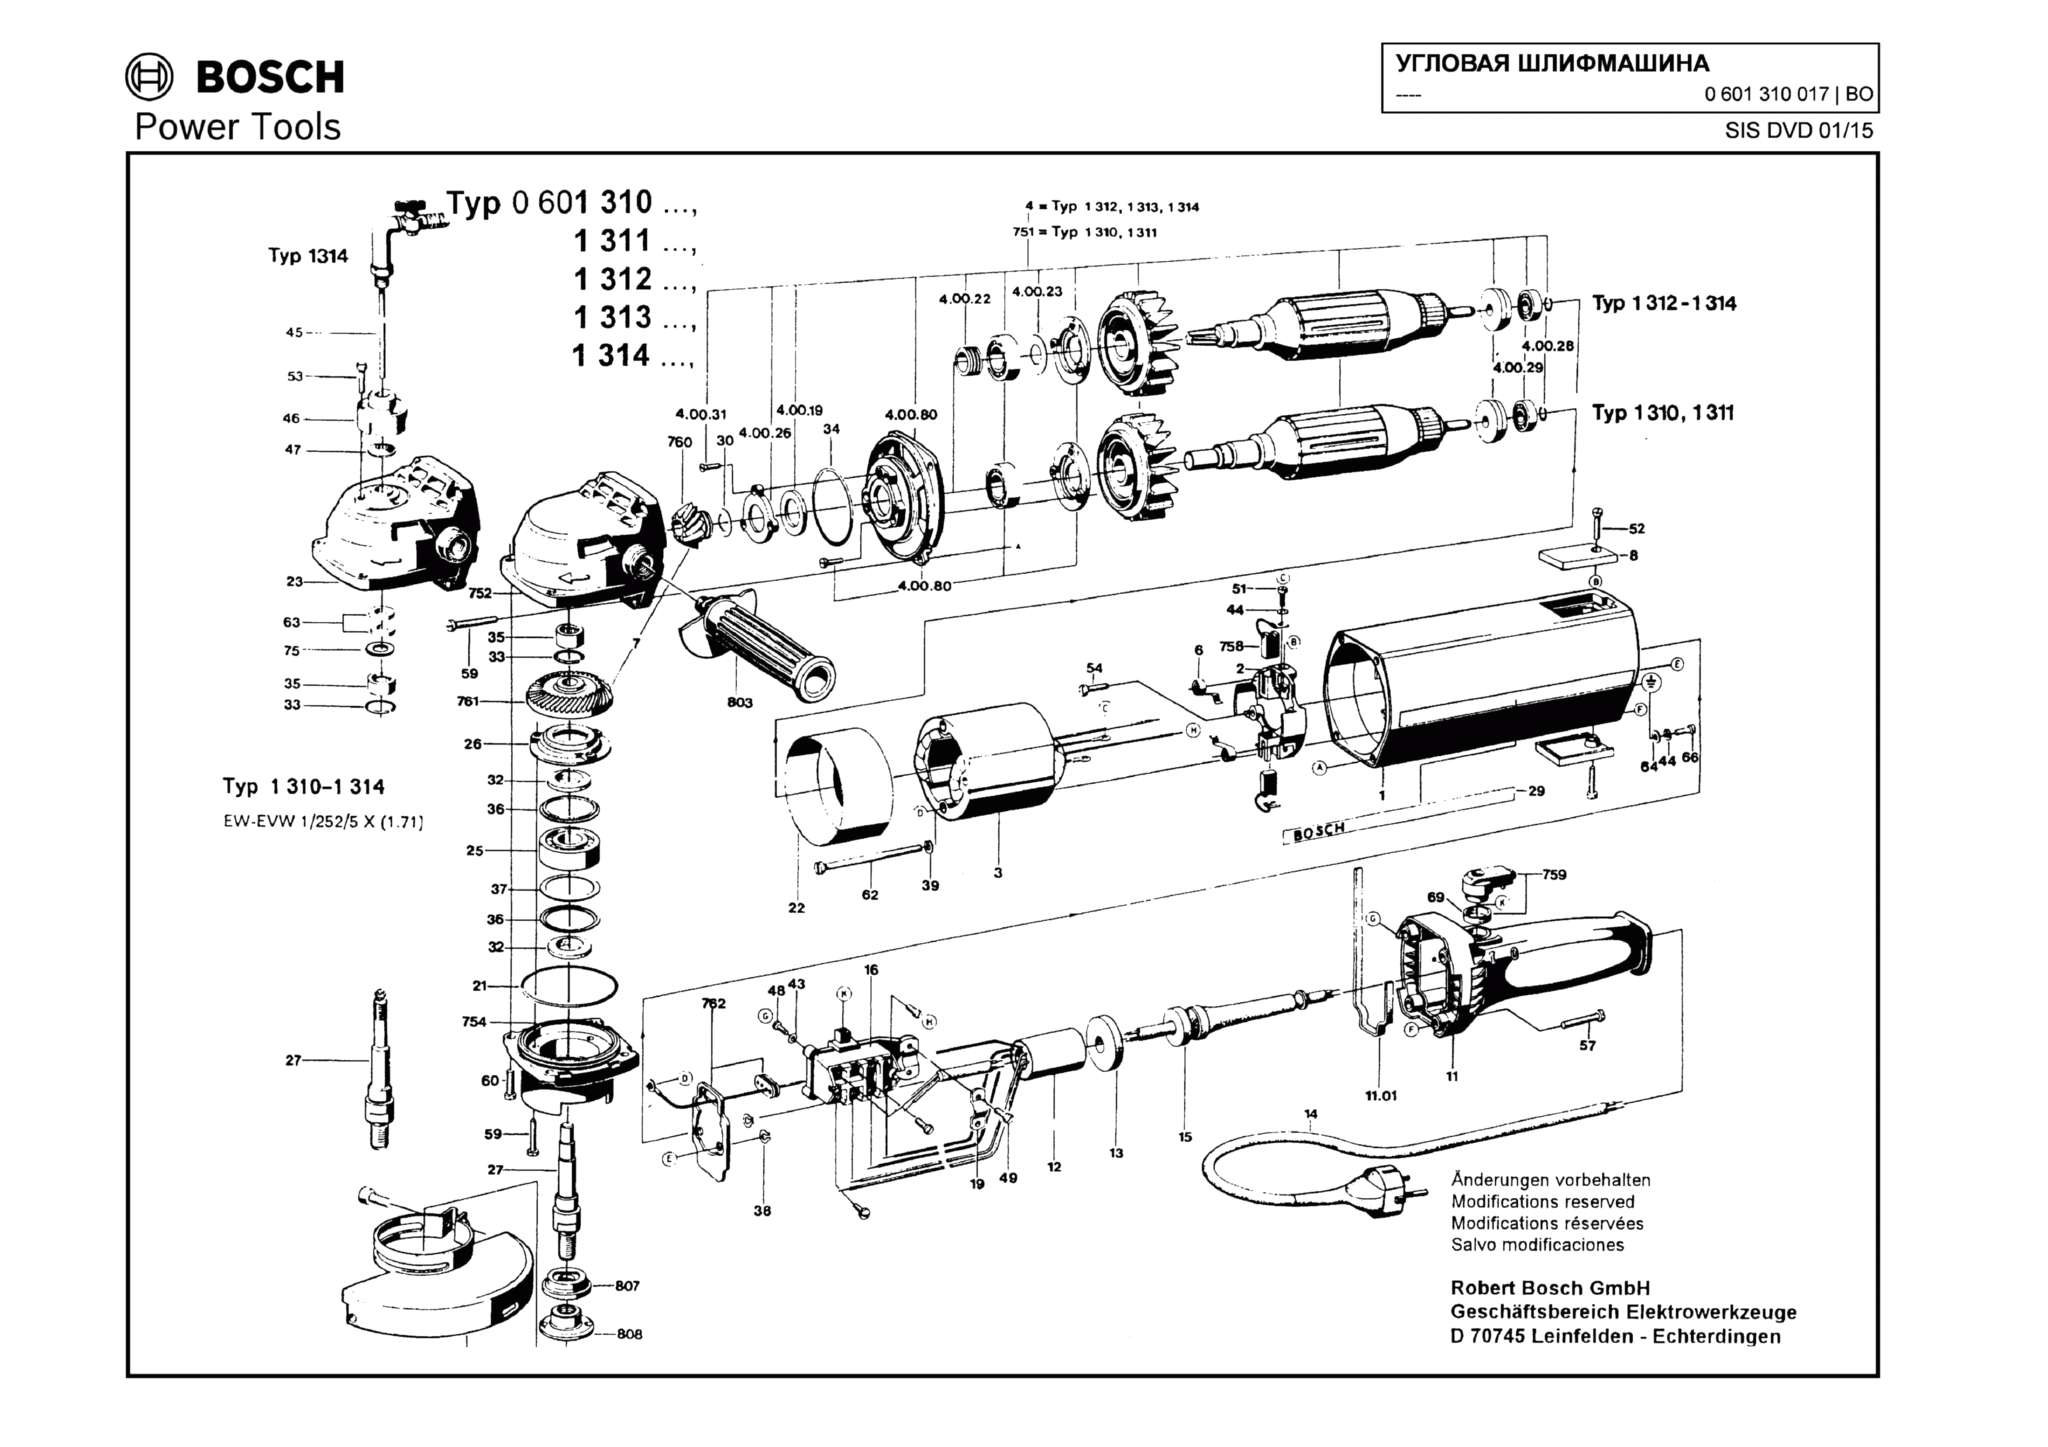 Запчасти, схема и деталировка Bosch (ТИП 0601310017)